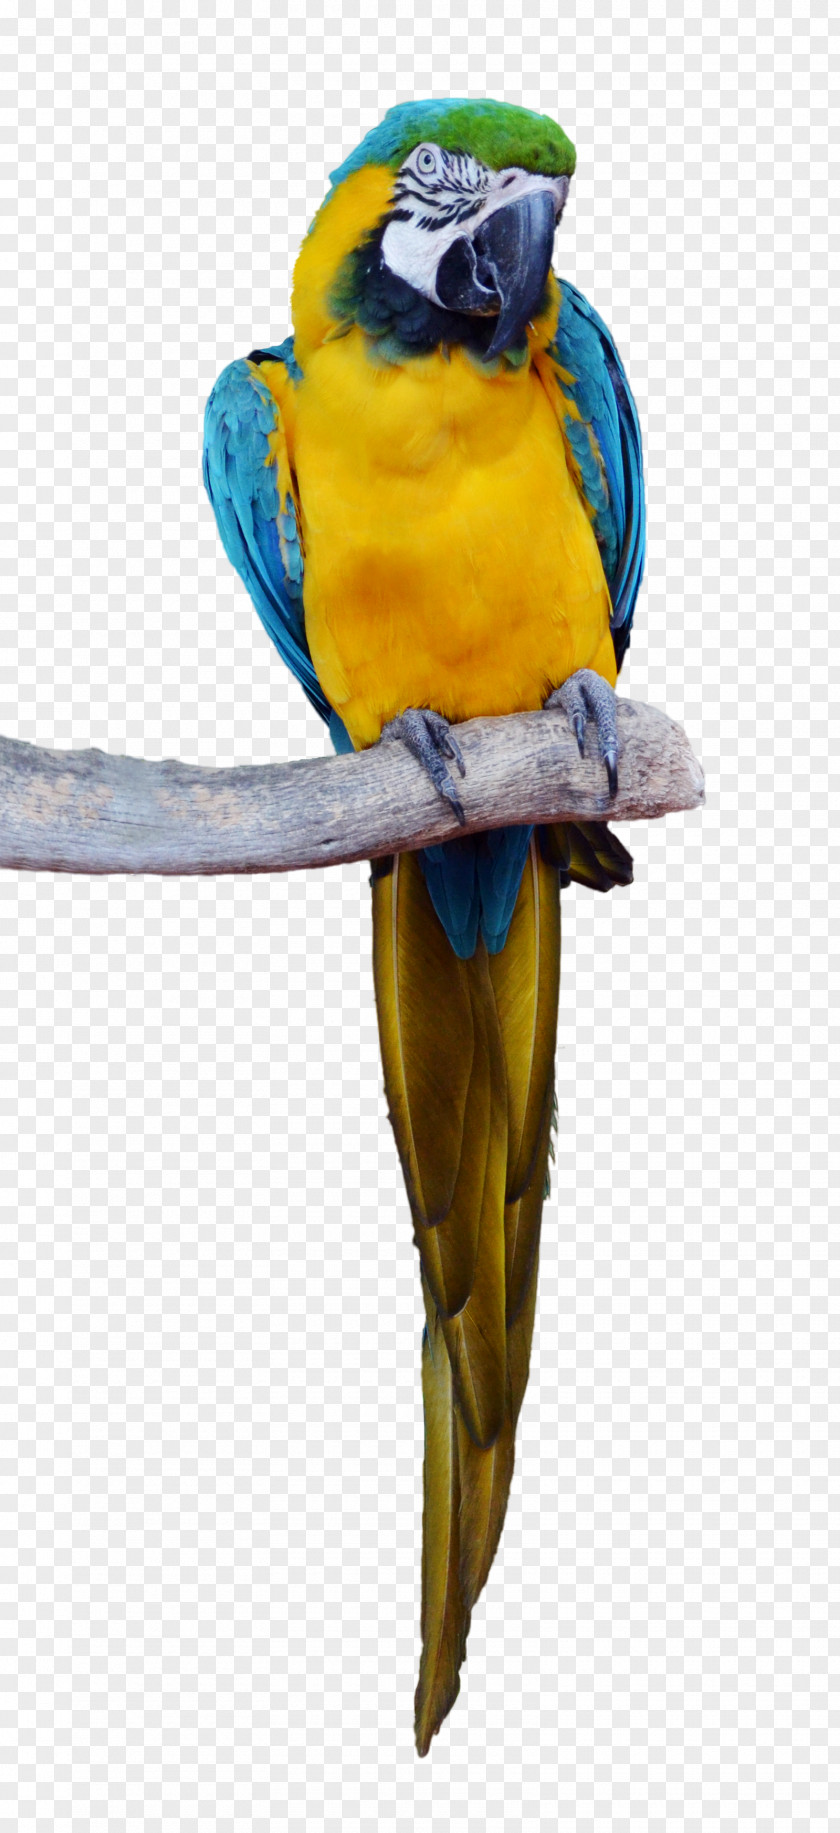 Parrot Bird Macaw Parakeet PNG